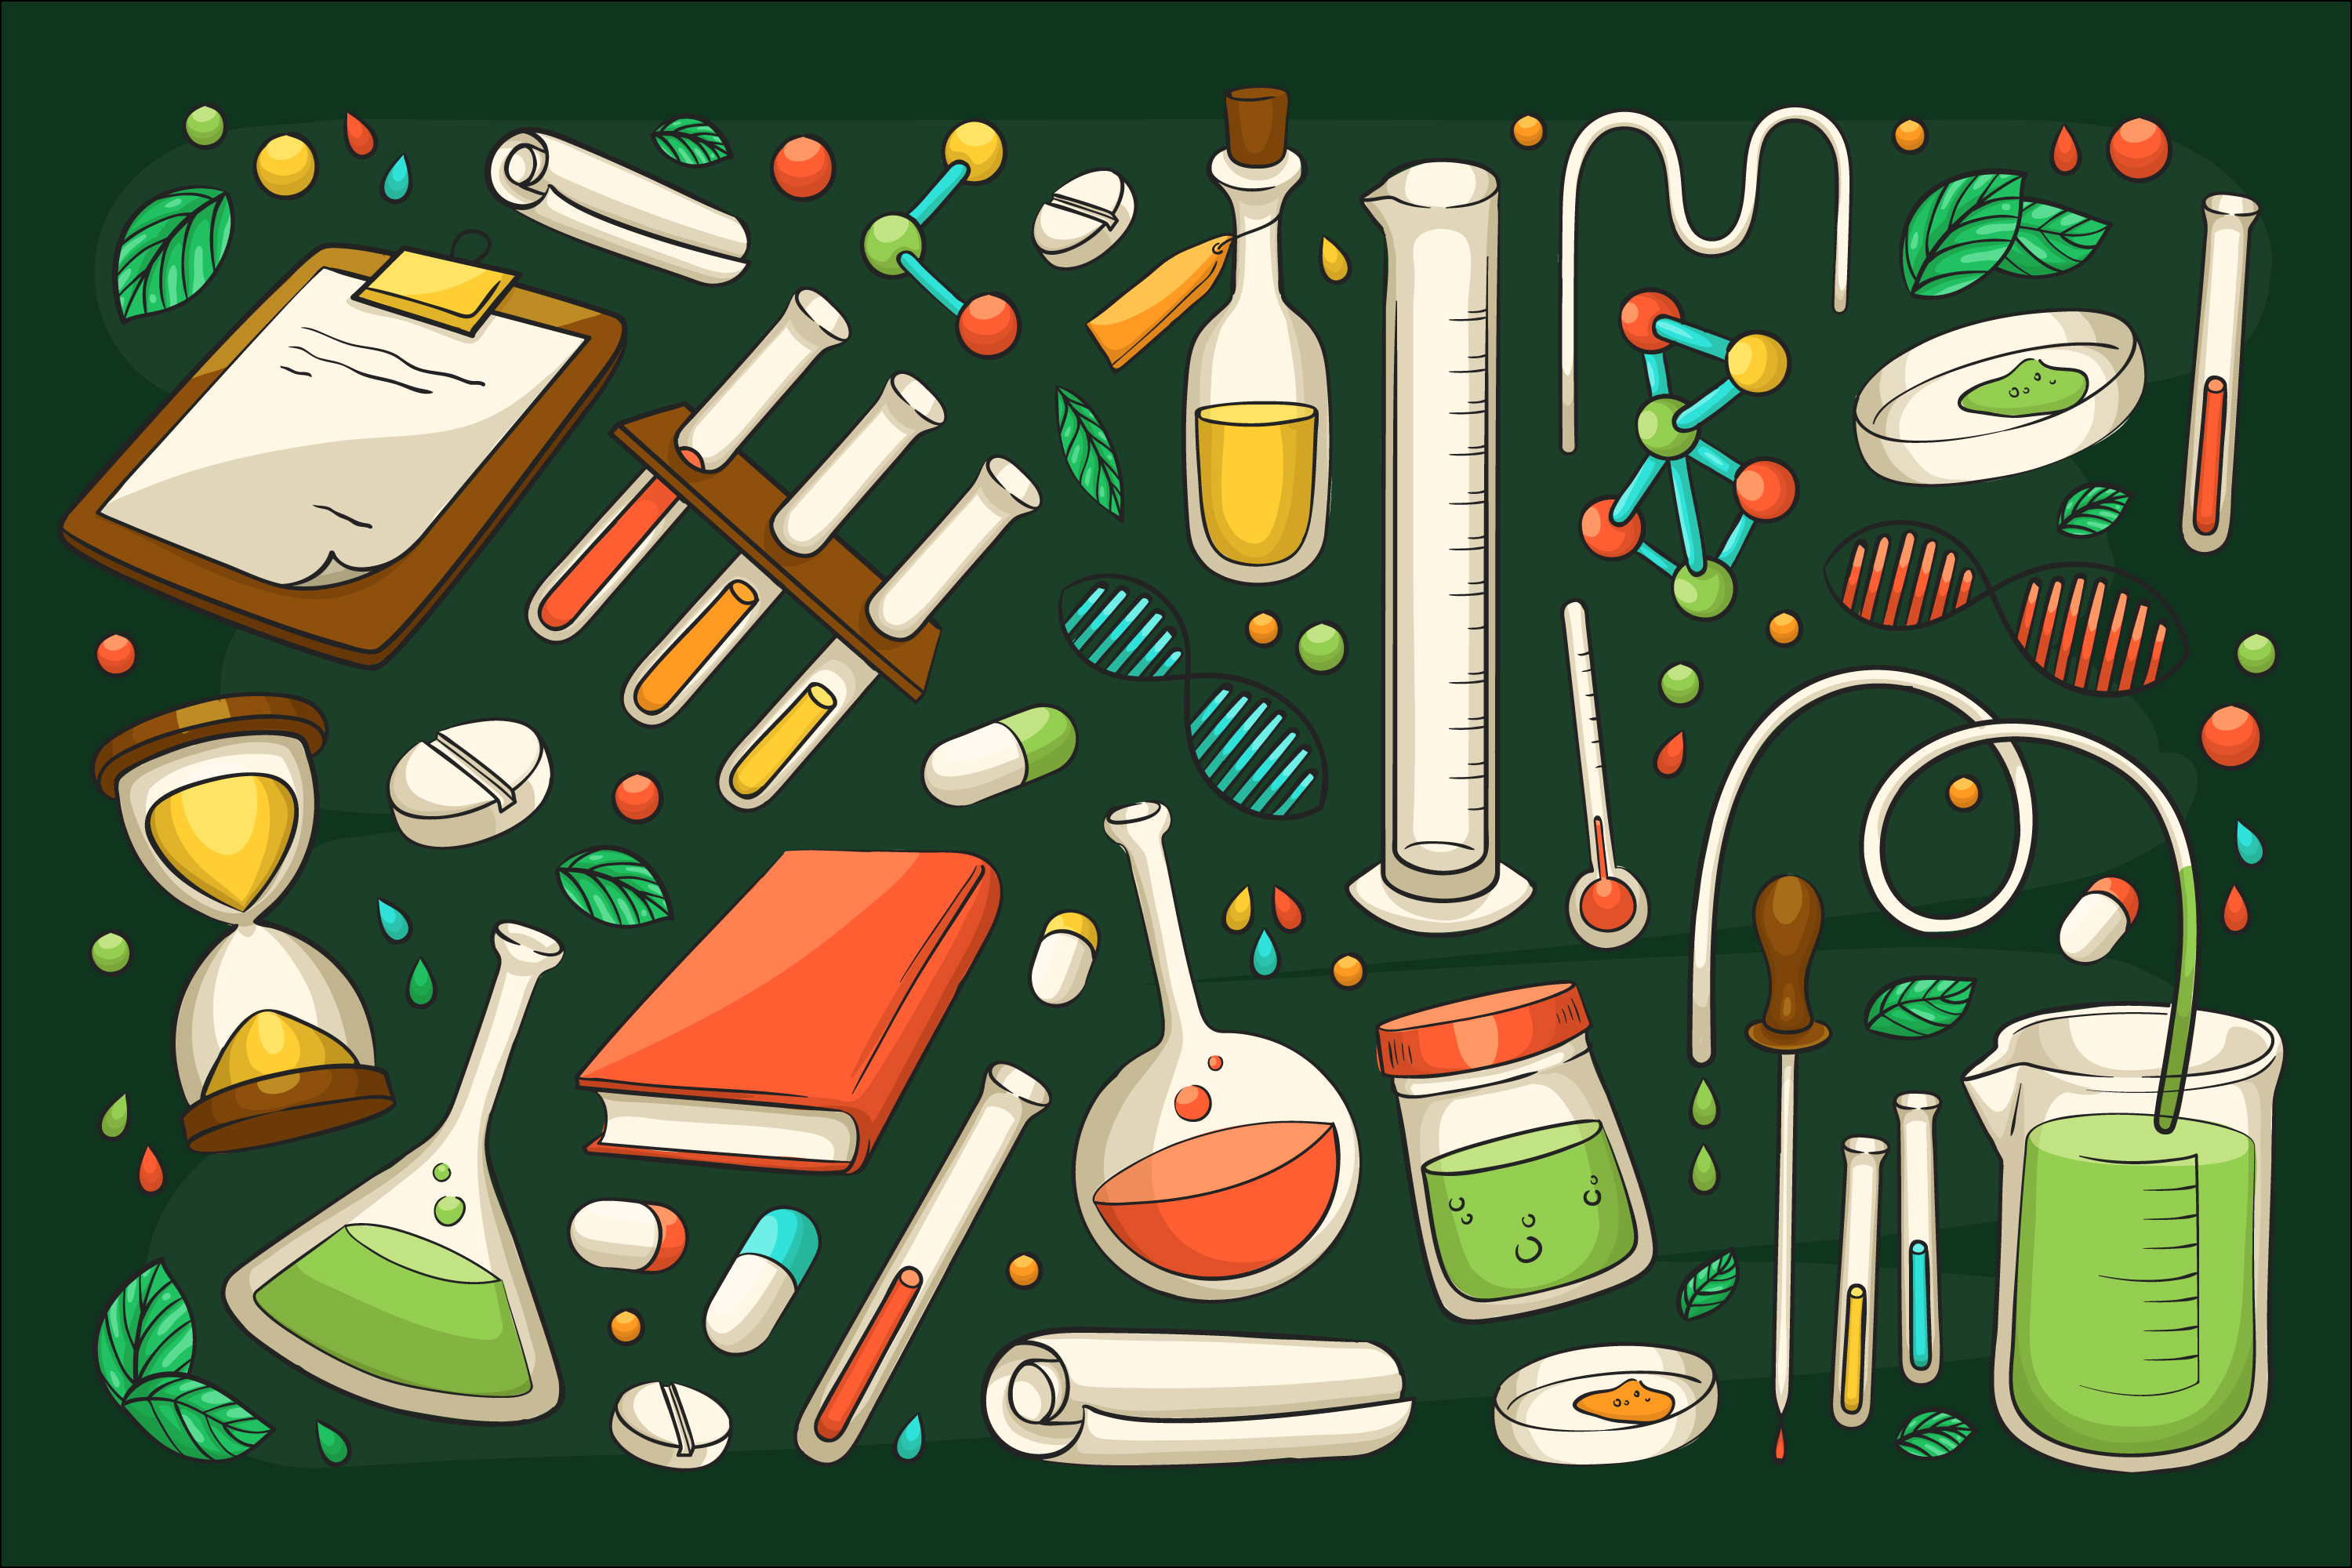 Коллаж из различных изображений, связанных с биологией, на темно-зеленом фоне: пробирки, микроскопы, спираль ДНК и другие